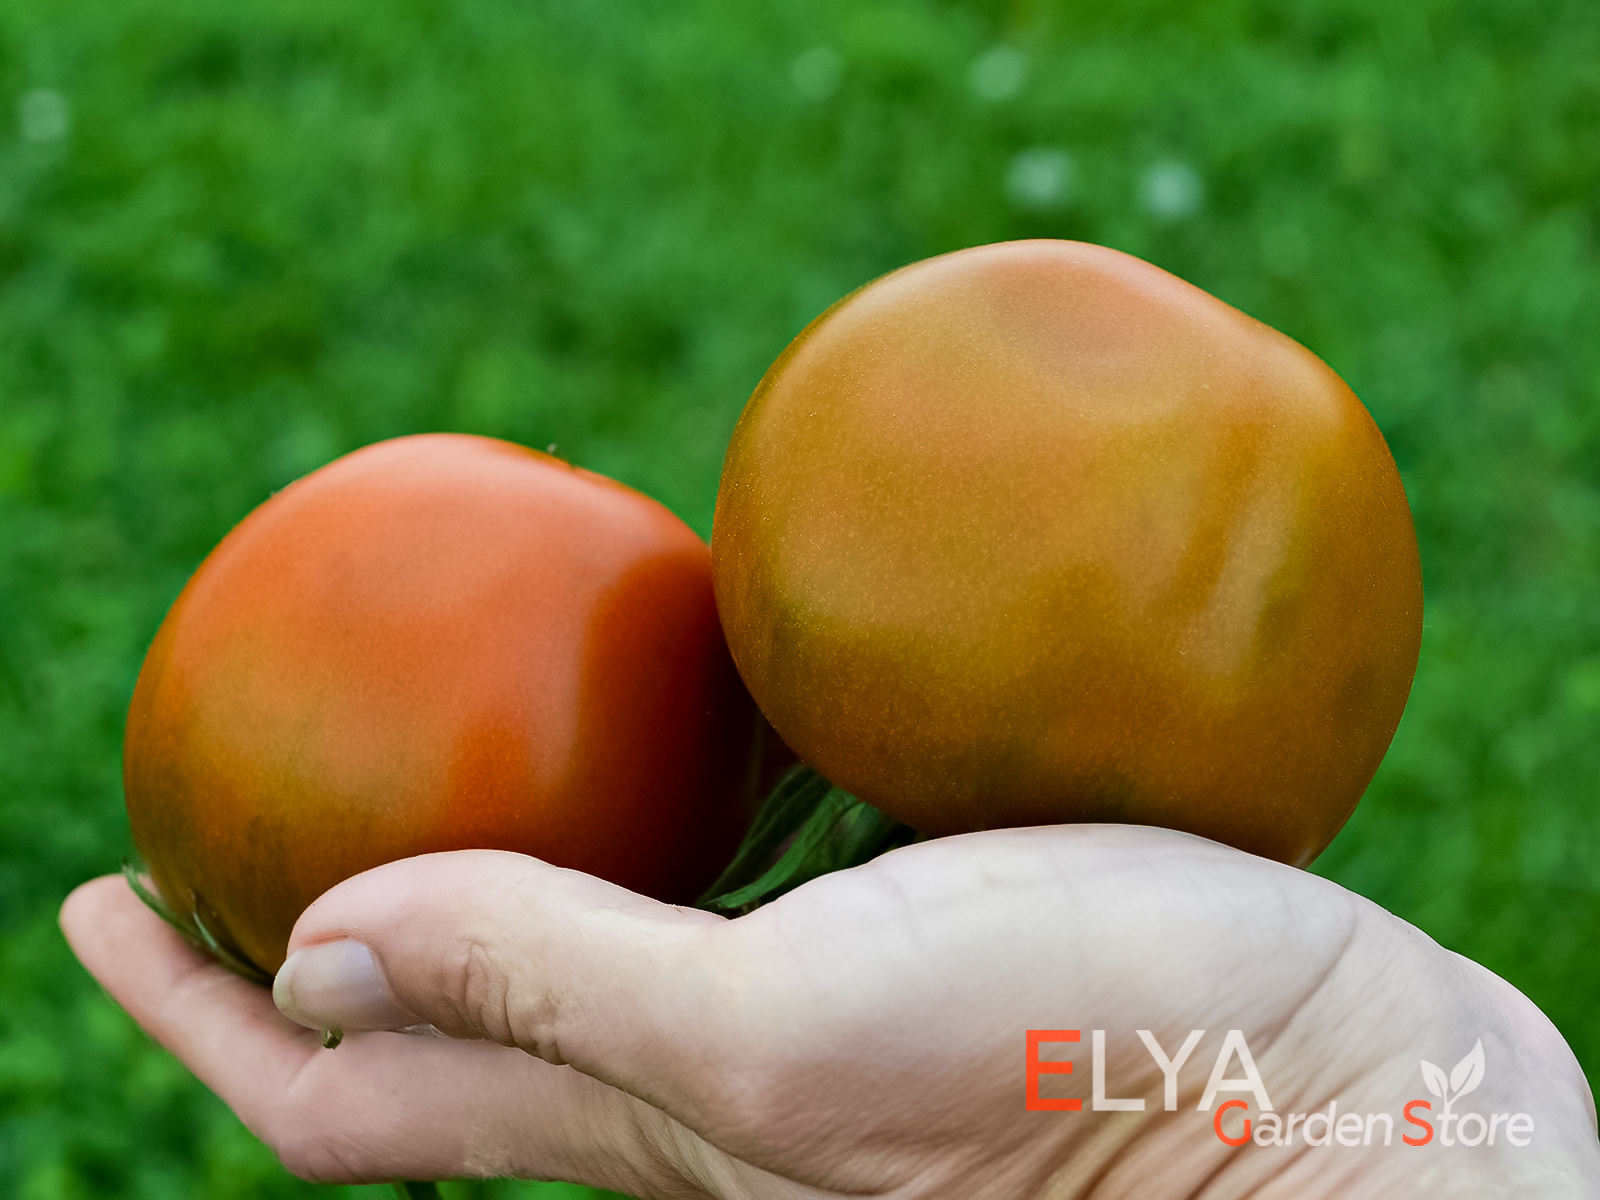 Вкус томата Терракотовый Торбена вам наверняка понравится, в нем очень сильна томатная нотка - фото магазина коллекционных семян Elya Garden